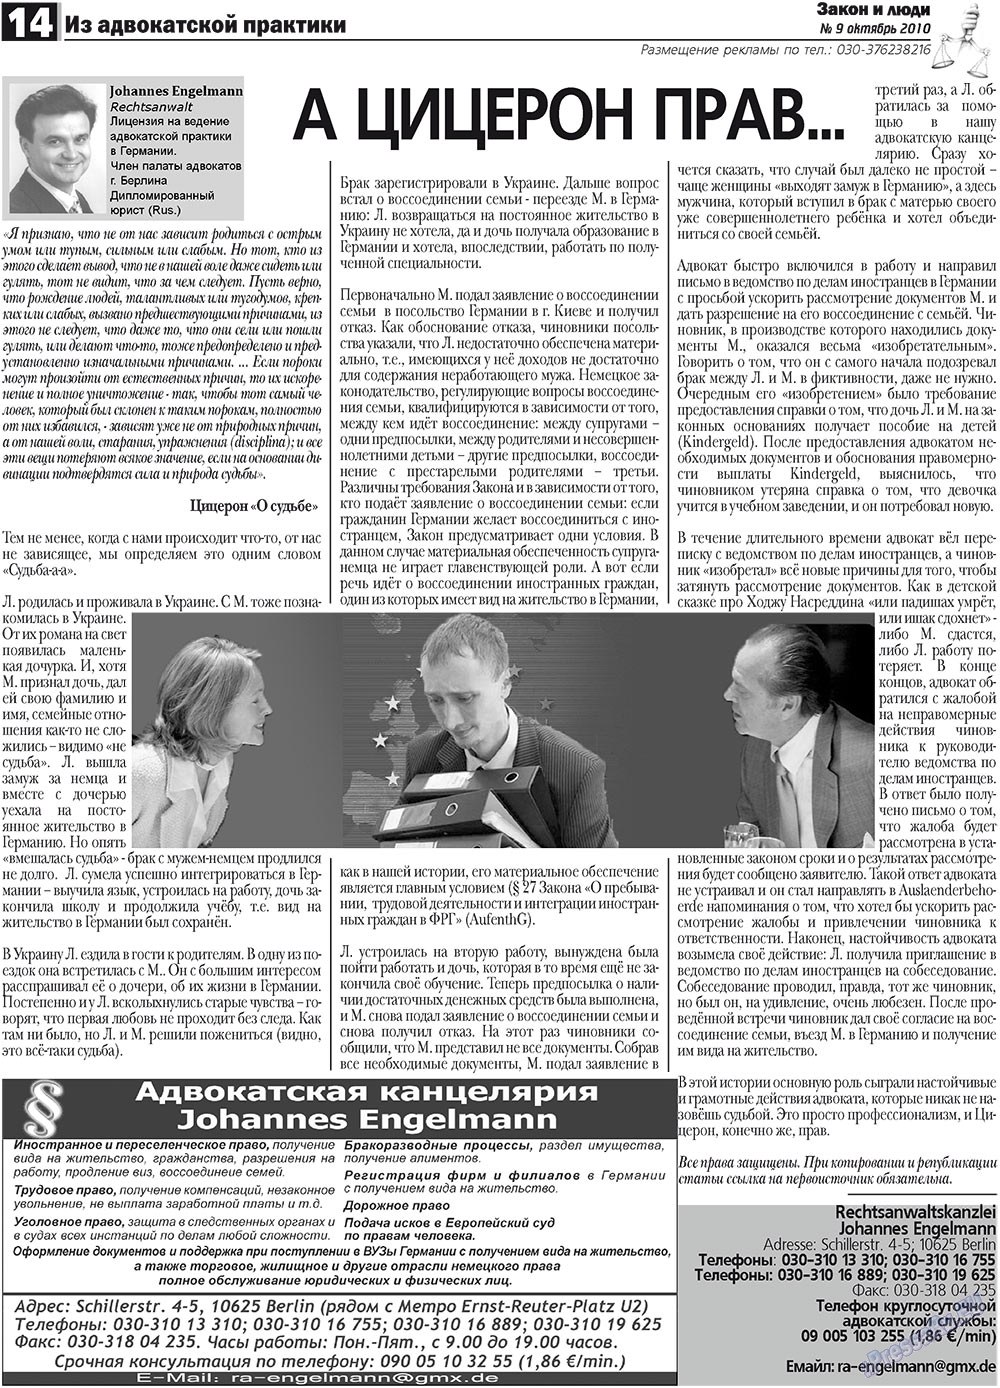 Закон и люди, газета. 2010 №9 стр.14